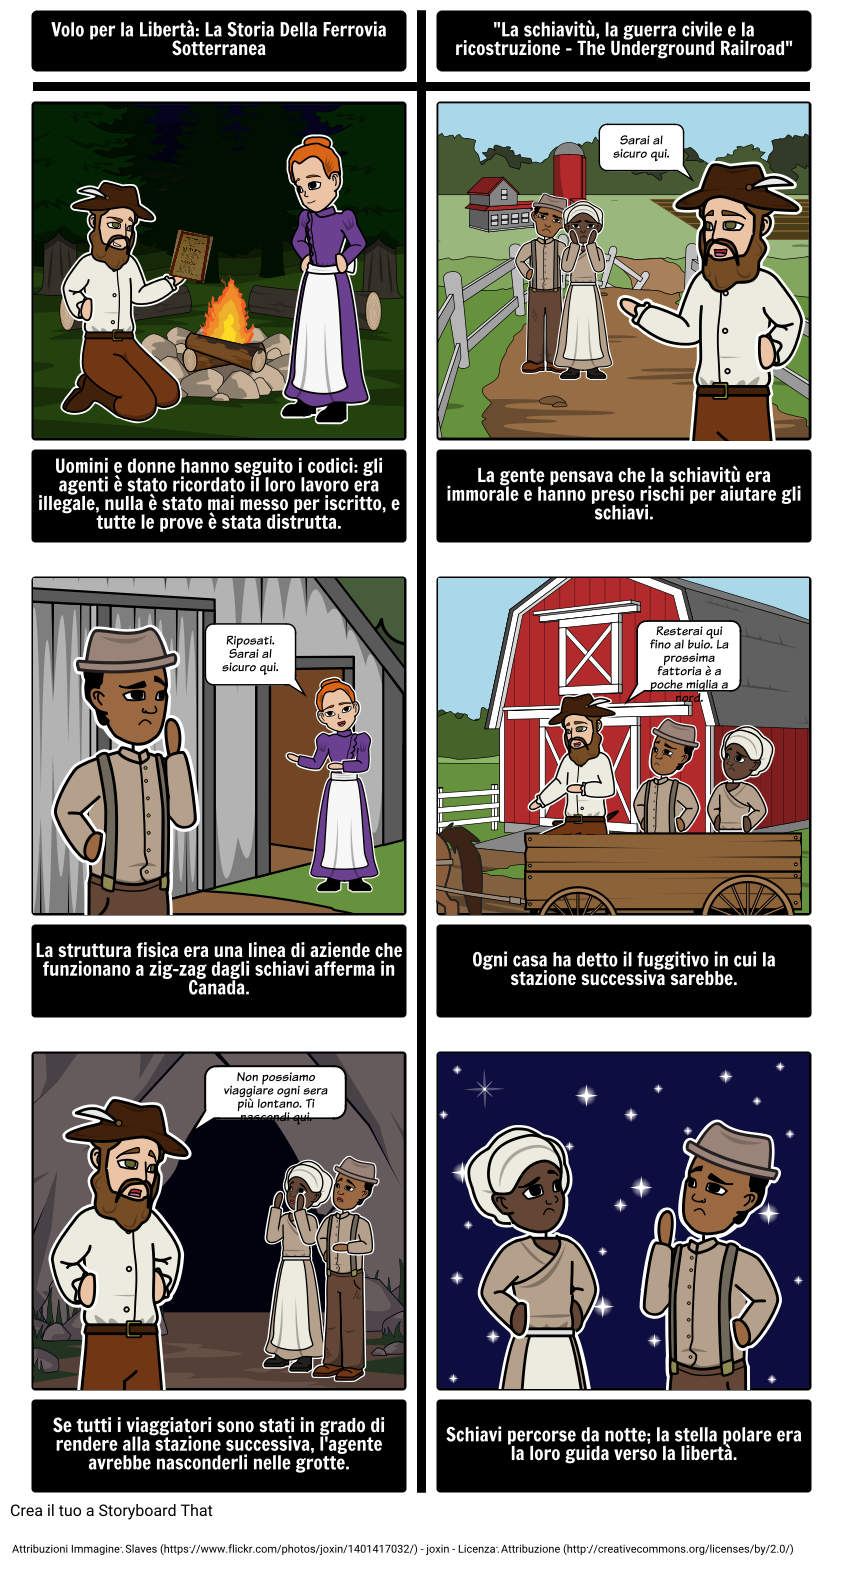 Il Underground Railroad - Integrazione Testi